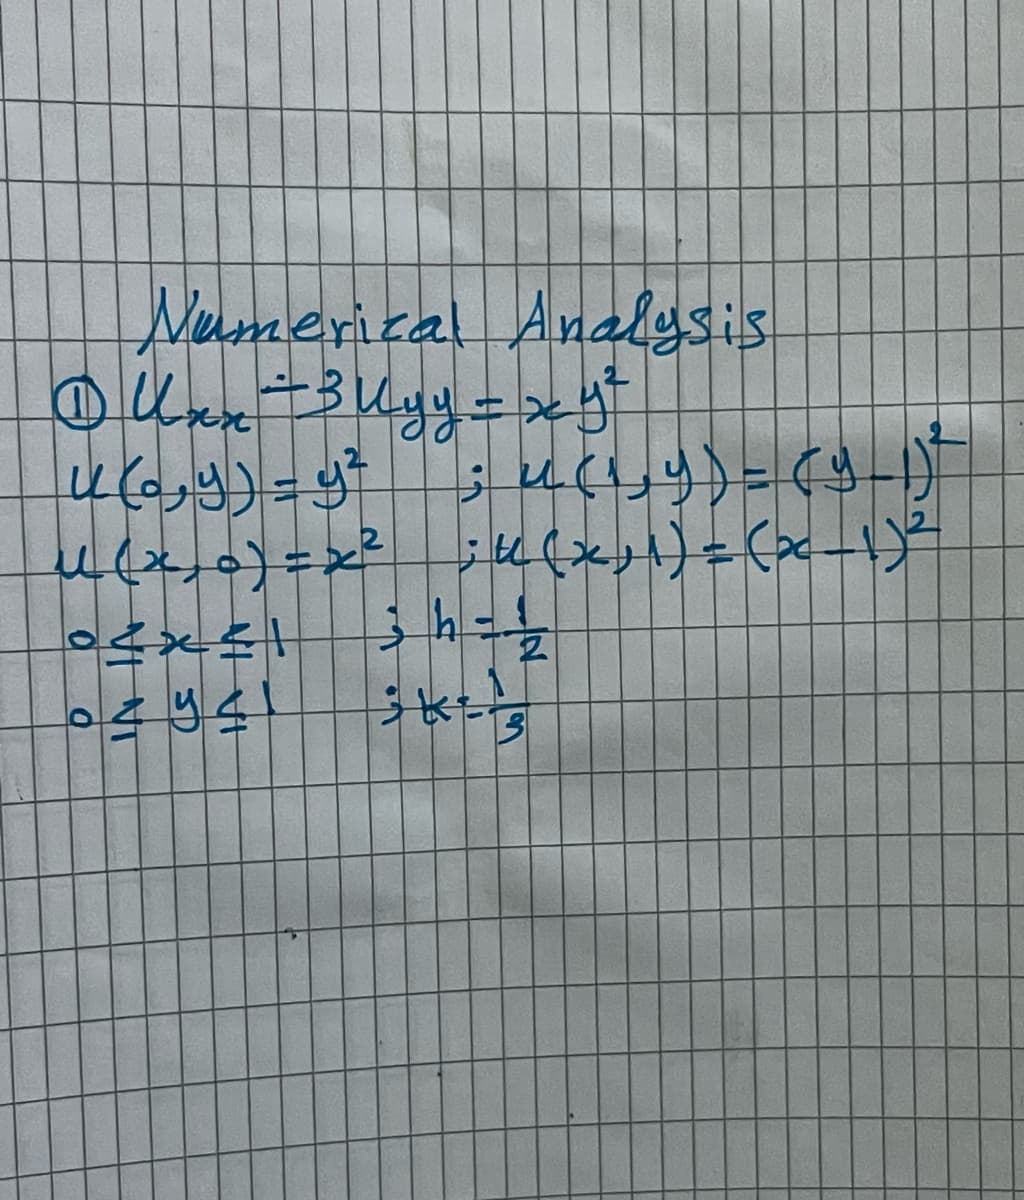 Numerical Analysis
Our Bugy=>g
رو) - (راز
9 = (ره)
(2-1) = (ارد) از : امحال
22
- طز
IN
2941